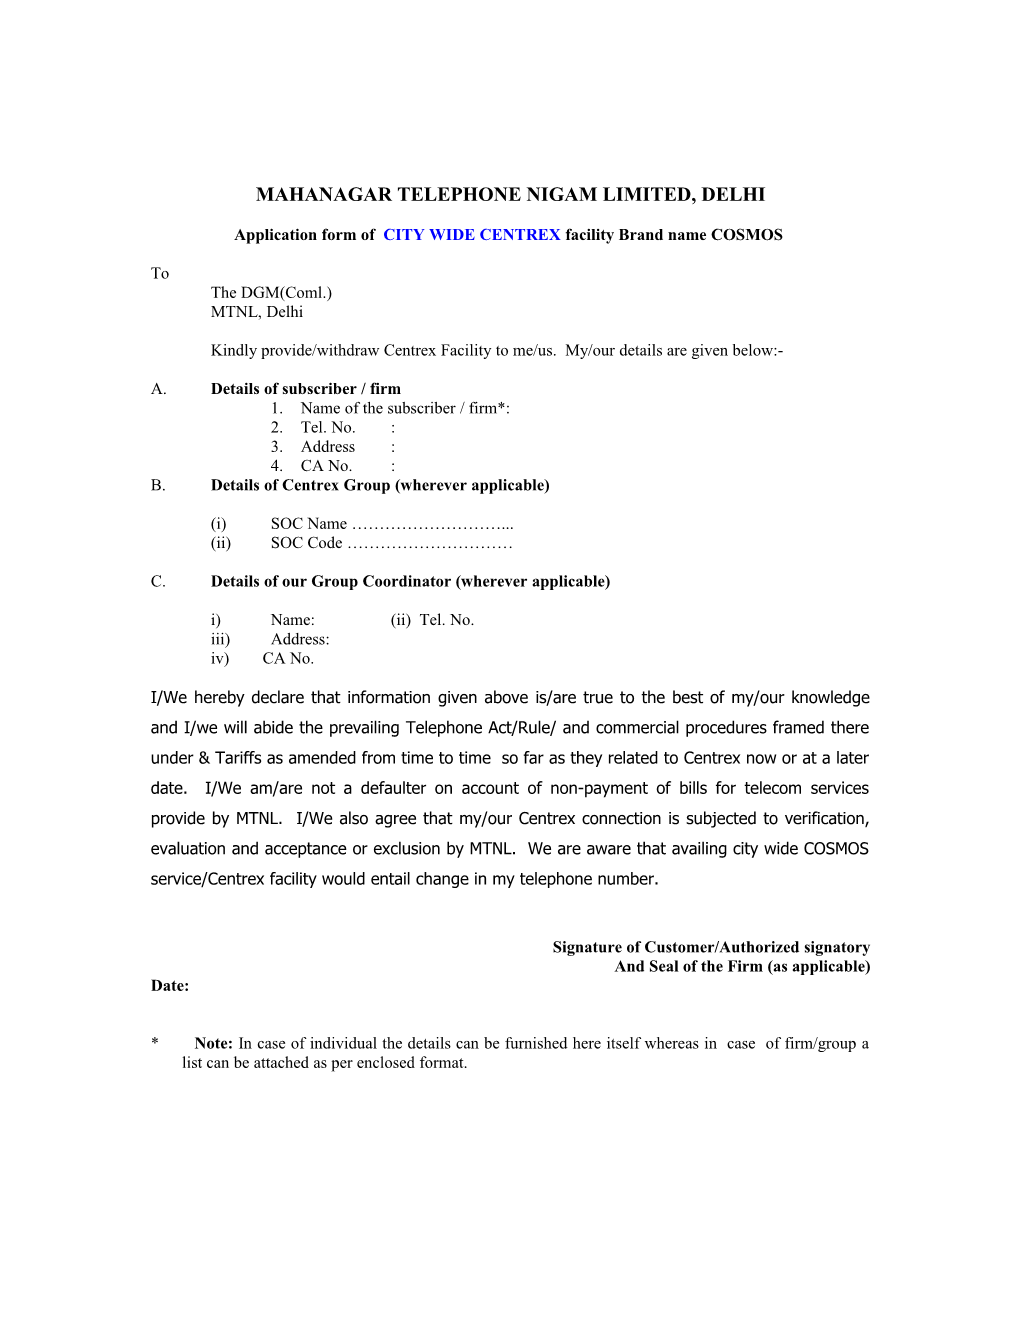 Mahanagar Telephone Nigam Ltd